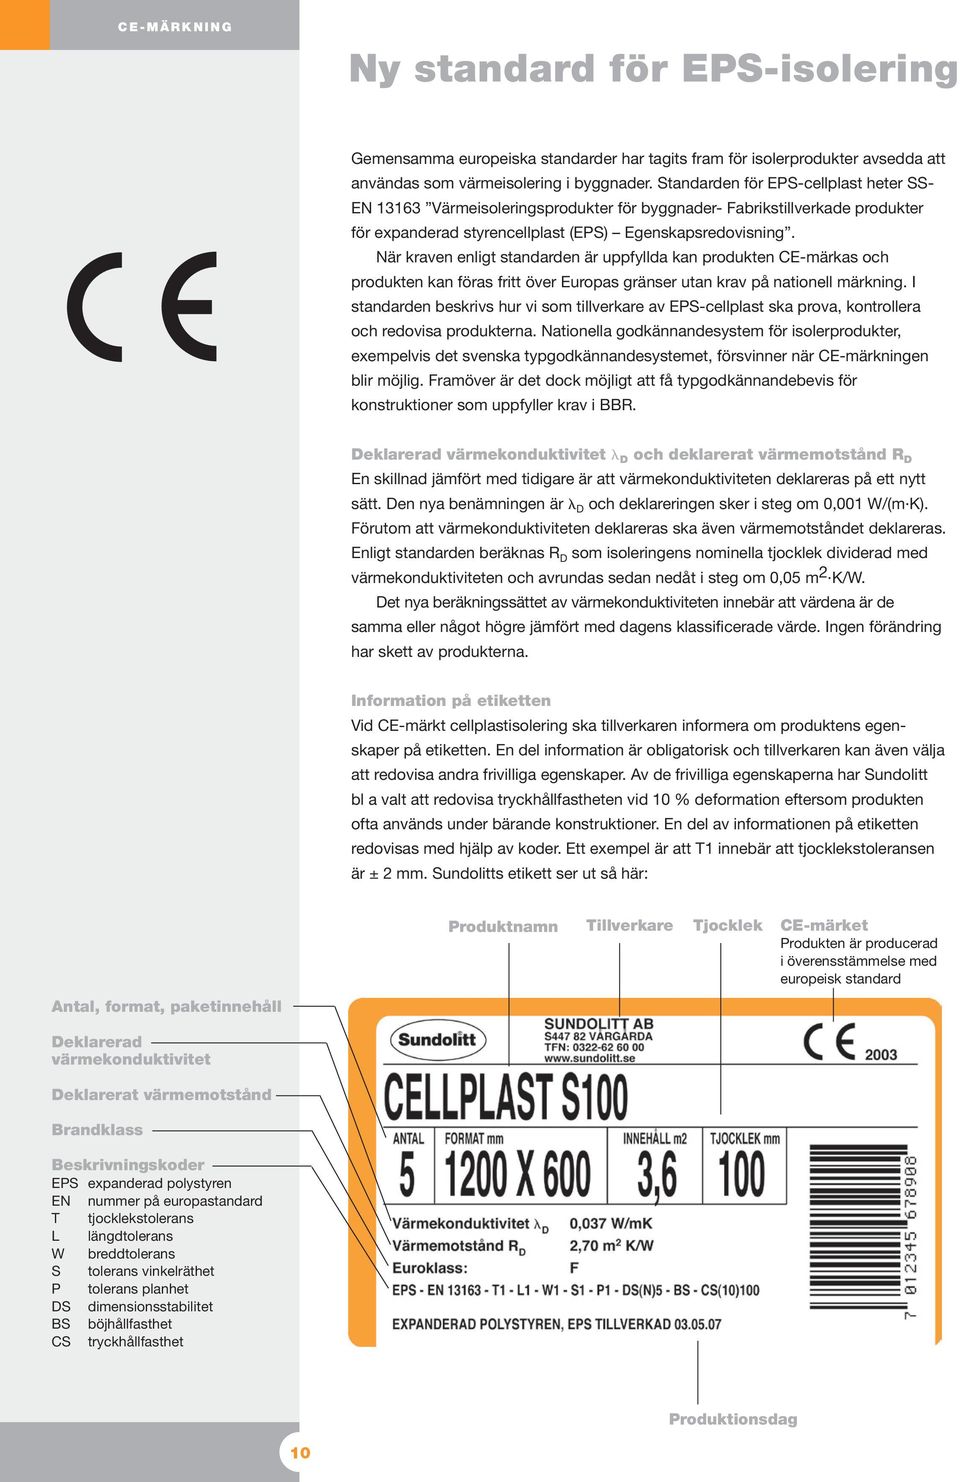 När kraven enligt standarden är uppfyllda kan produkten CE-märkas och produkten kan föras fritt över Europas gränser utan krav på nationell märkning.